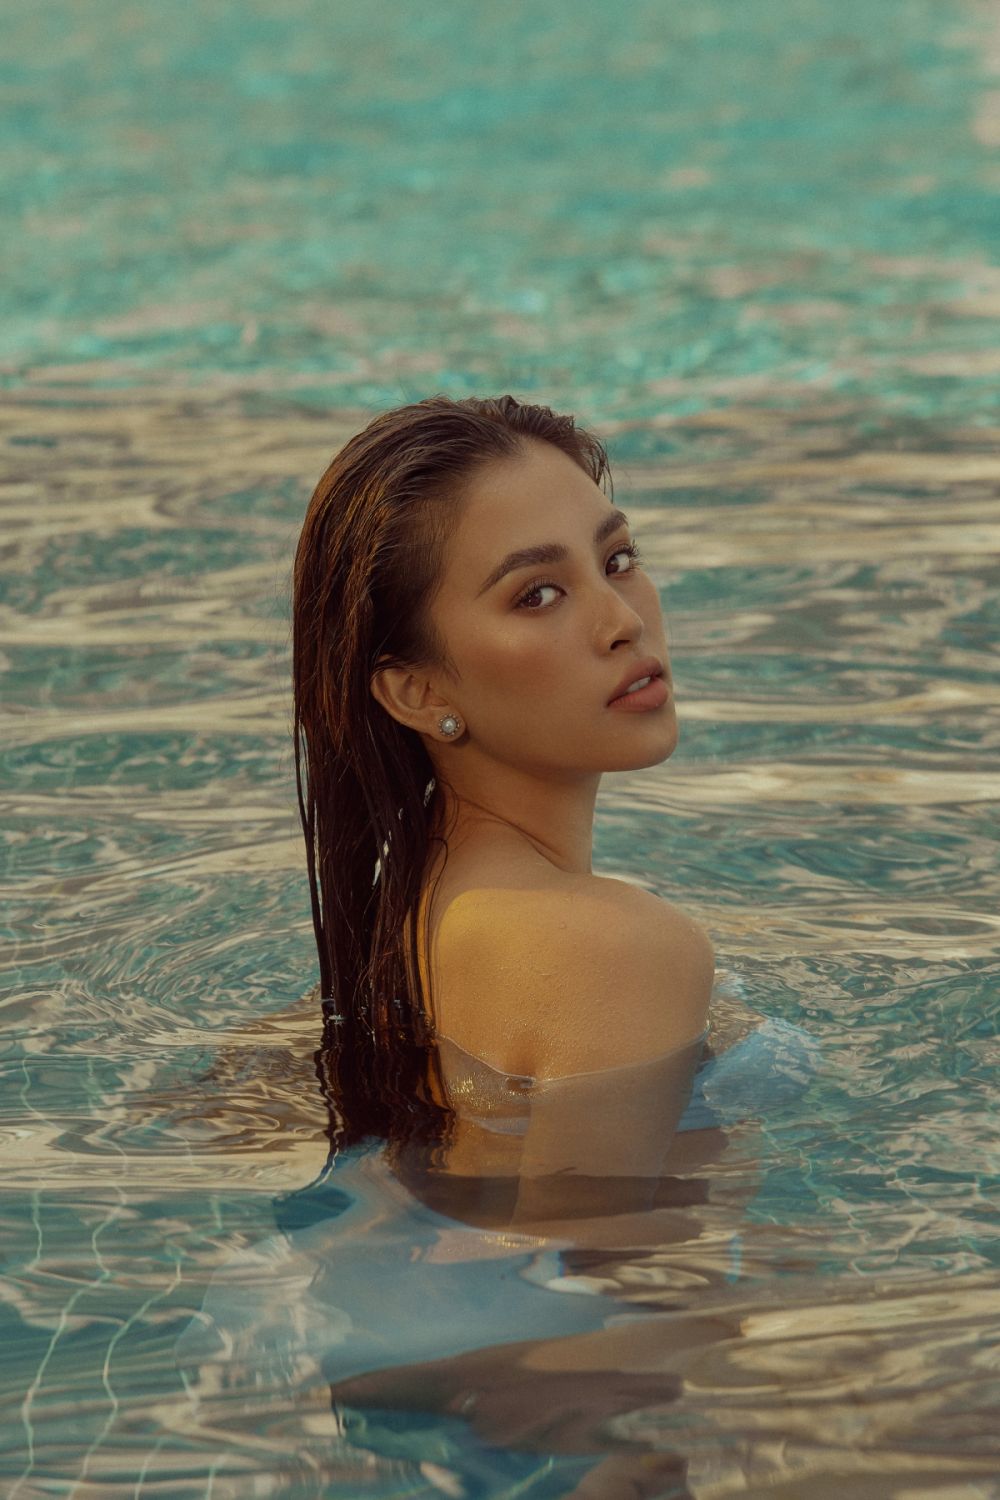 Sau khi hoàn thành 'sứ mệnh', Hoa hậu Tiểu Vy 'lột xác' trong bộ ảnh mới